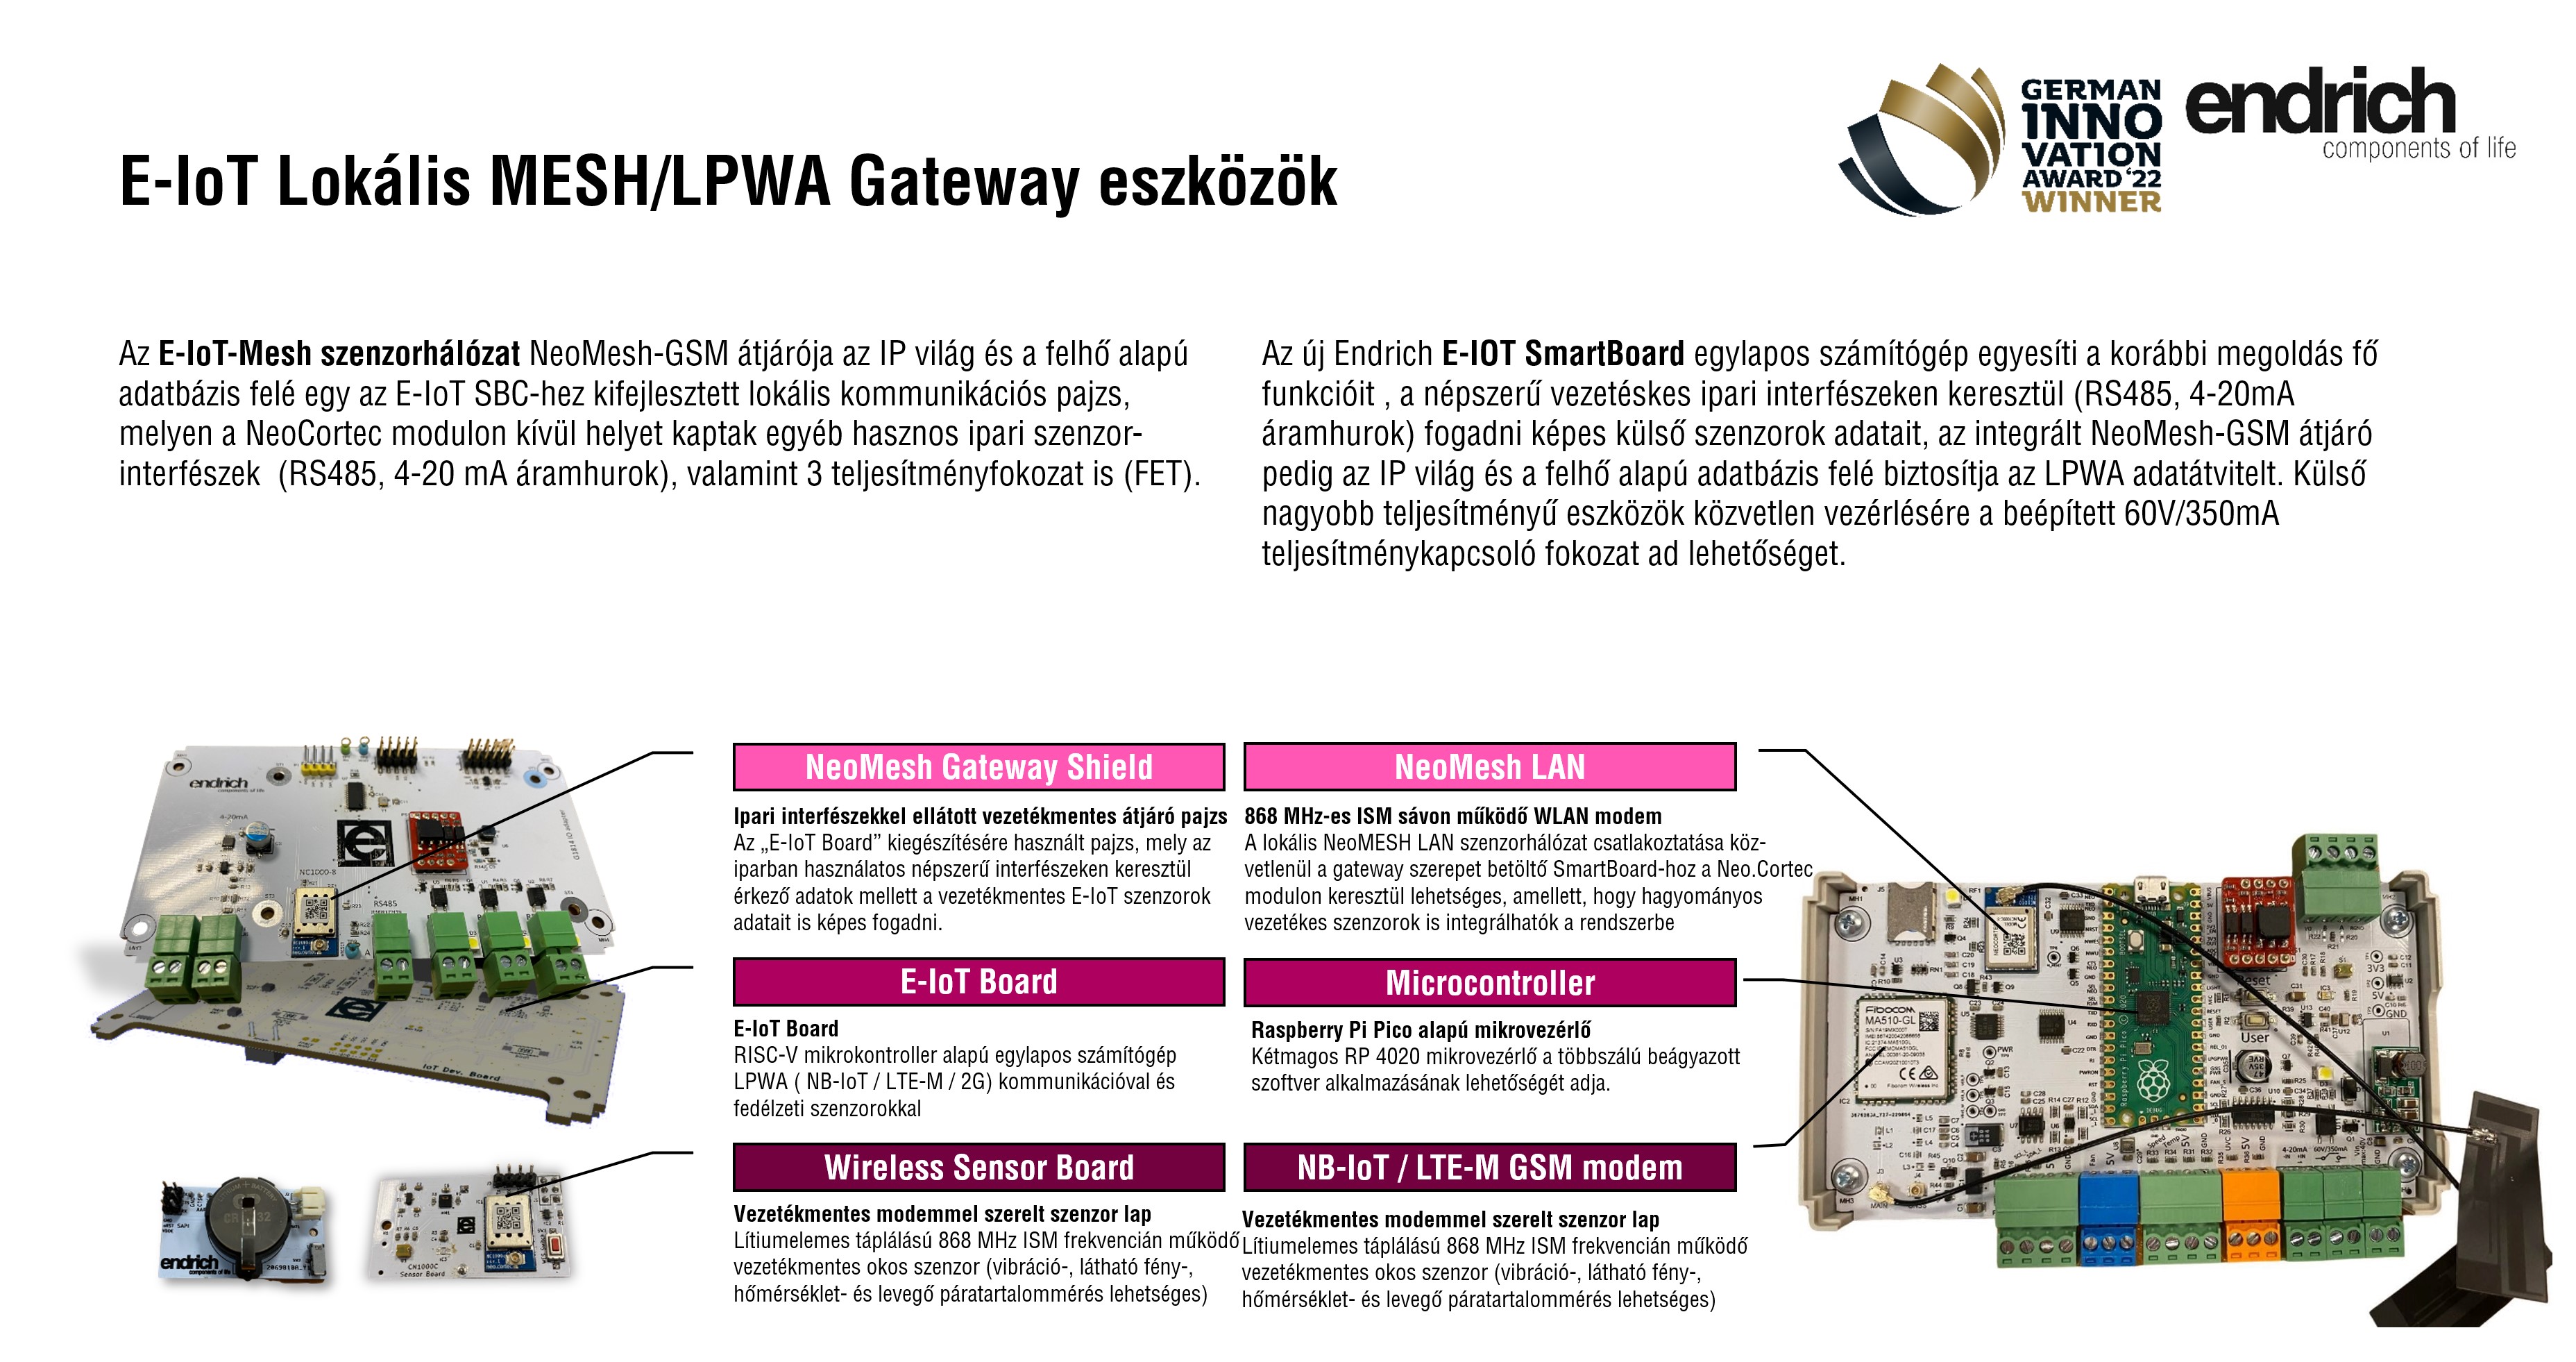 [1] Átjáró (Gateway) eszközök a vezetékmentes okosszenzorok integrálására az E-IoT MESH hálózatba